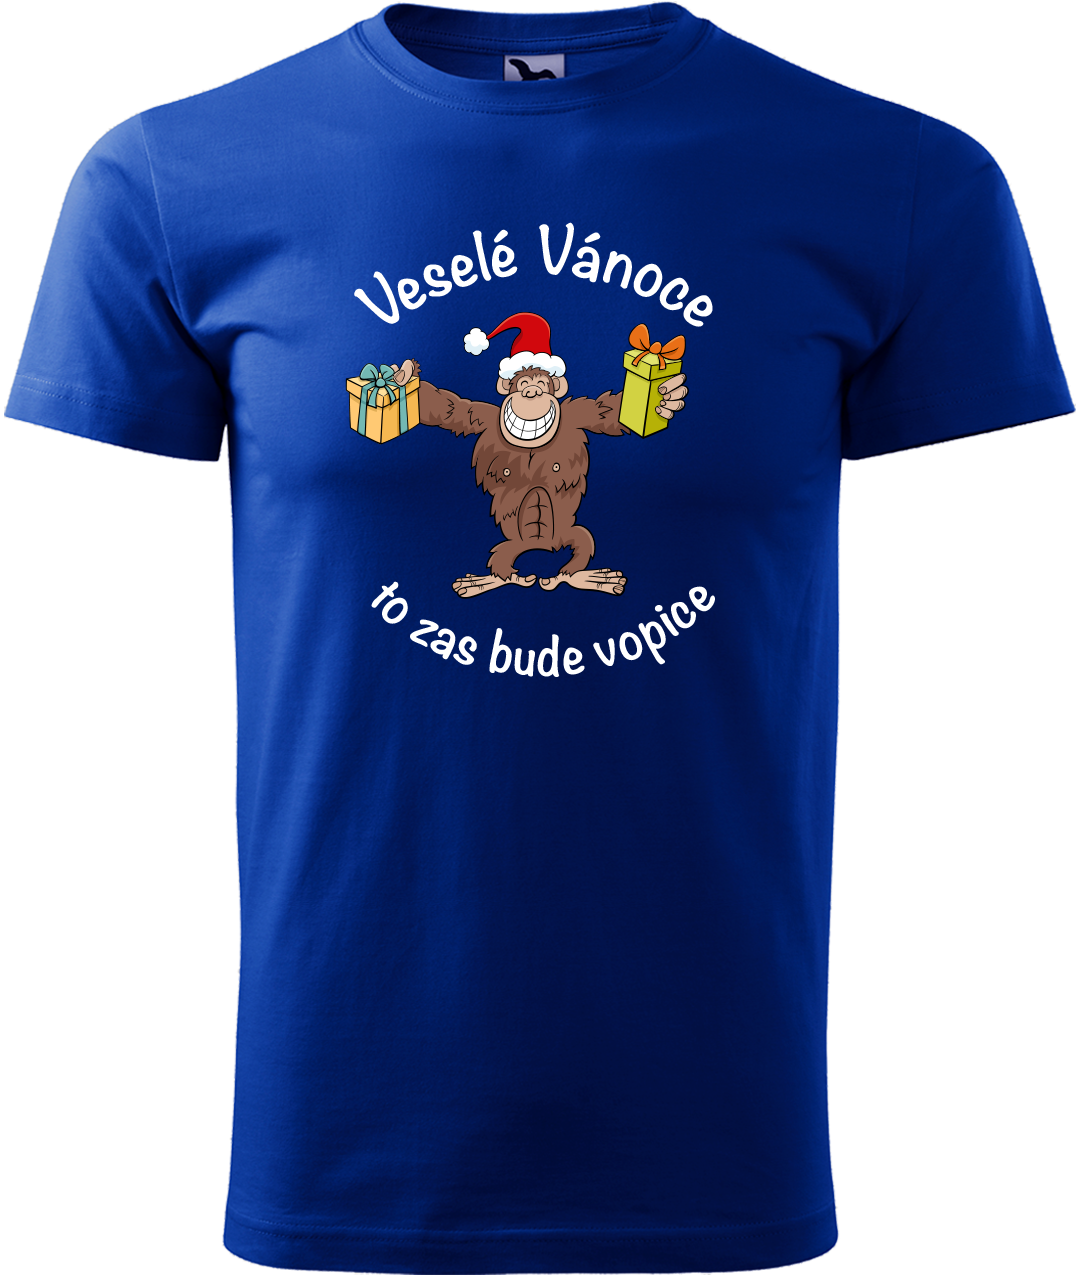 Pánské vánoční tričko - Veselé Vánoce to zas bude vopice (hnědý opičák) Velikost: M, Barva: Královská modrá (05)